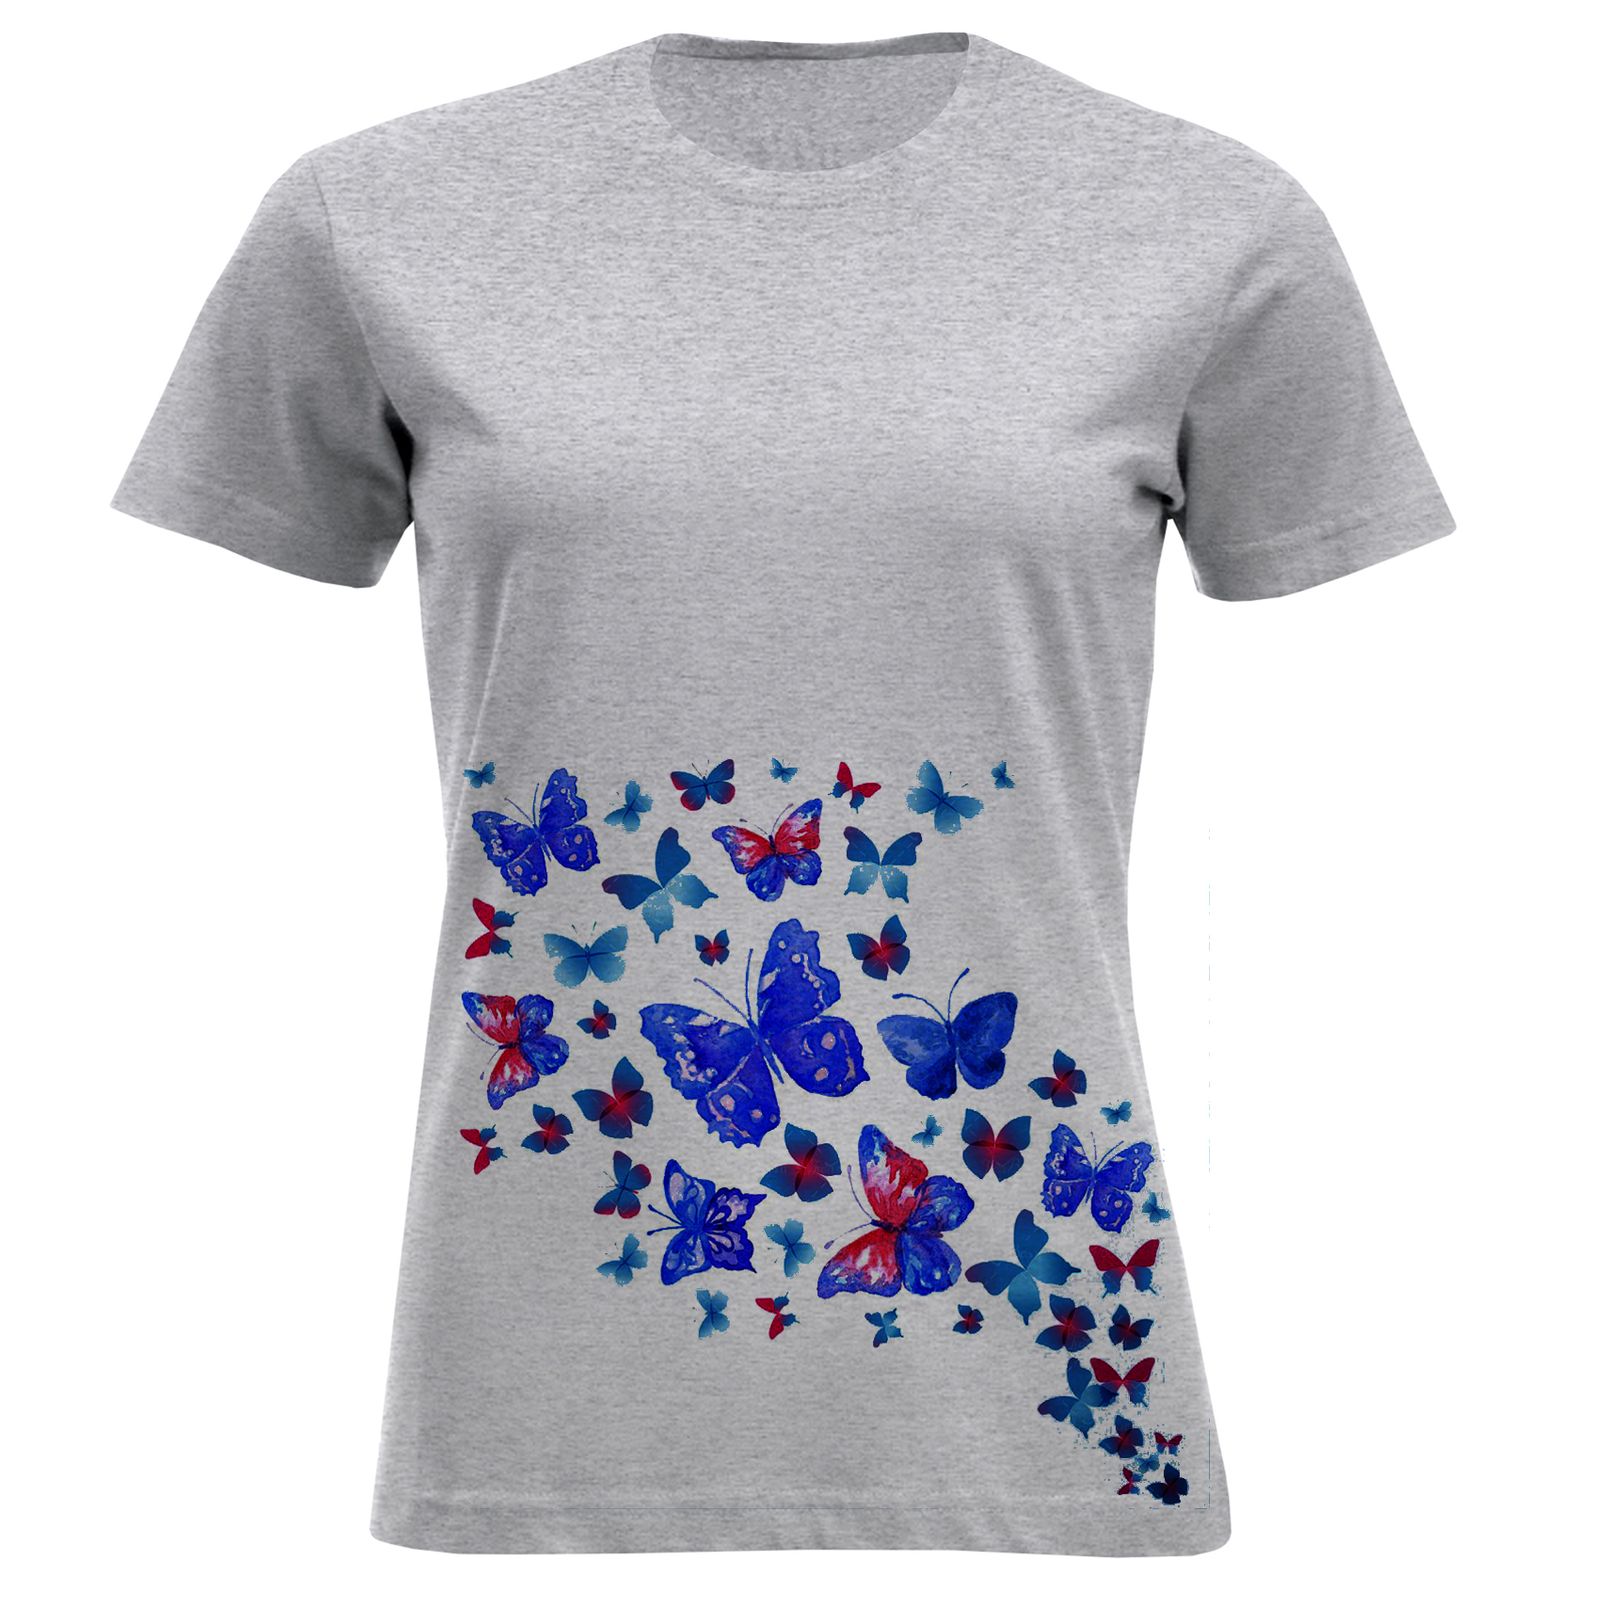 تی شرت زنانه مدل پروانه F897 -  - 3